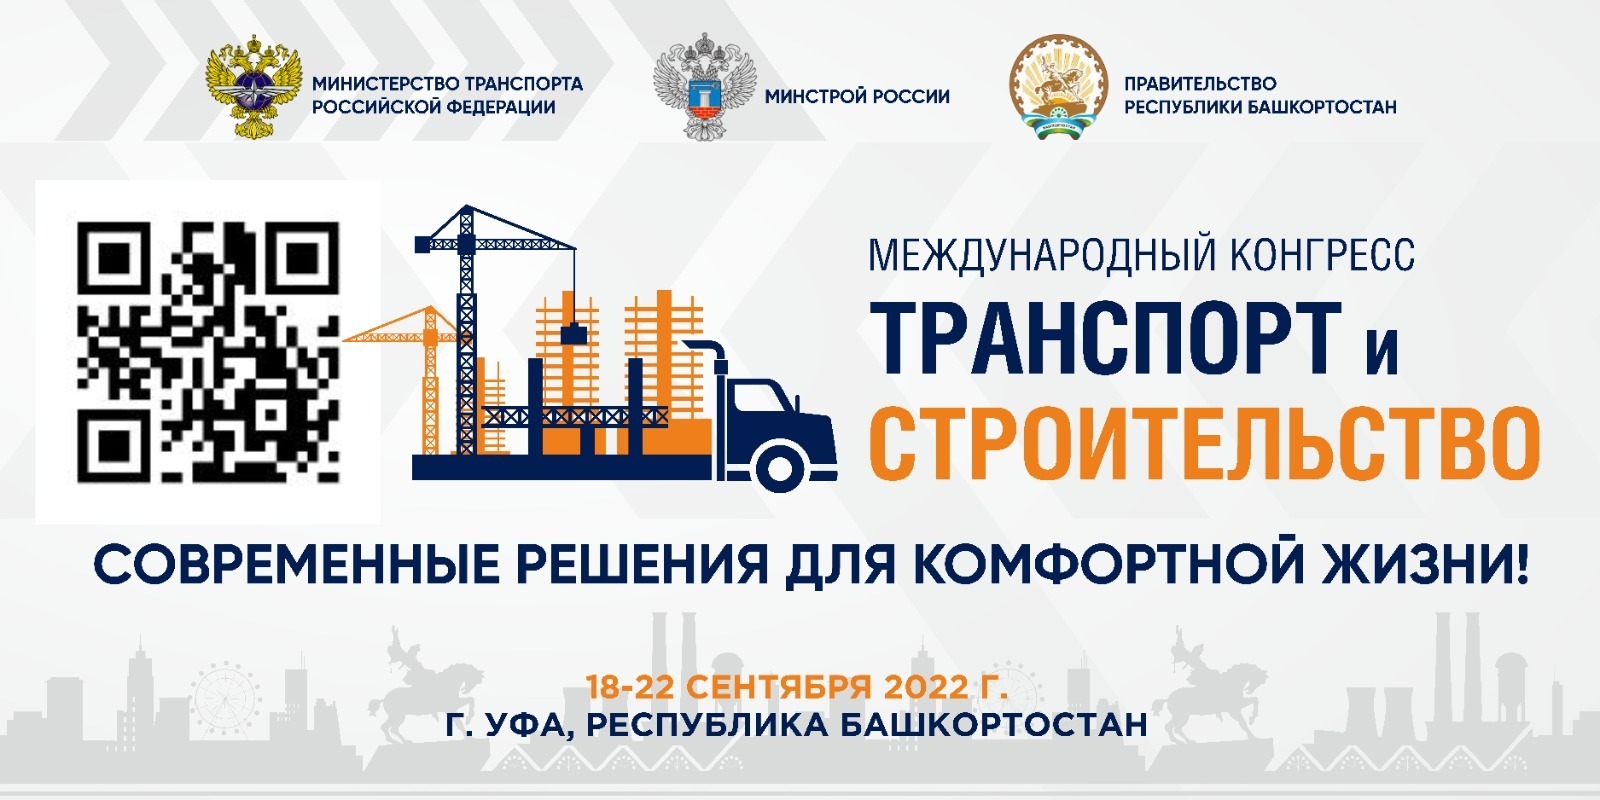 В столице Башкортостана впервые пройдет Международный конгресс «Транспорт и строительство»